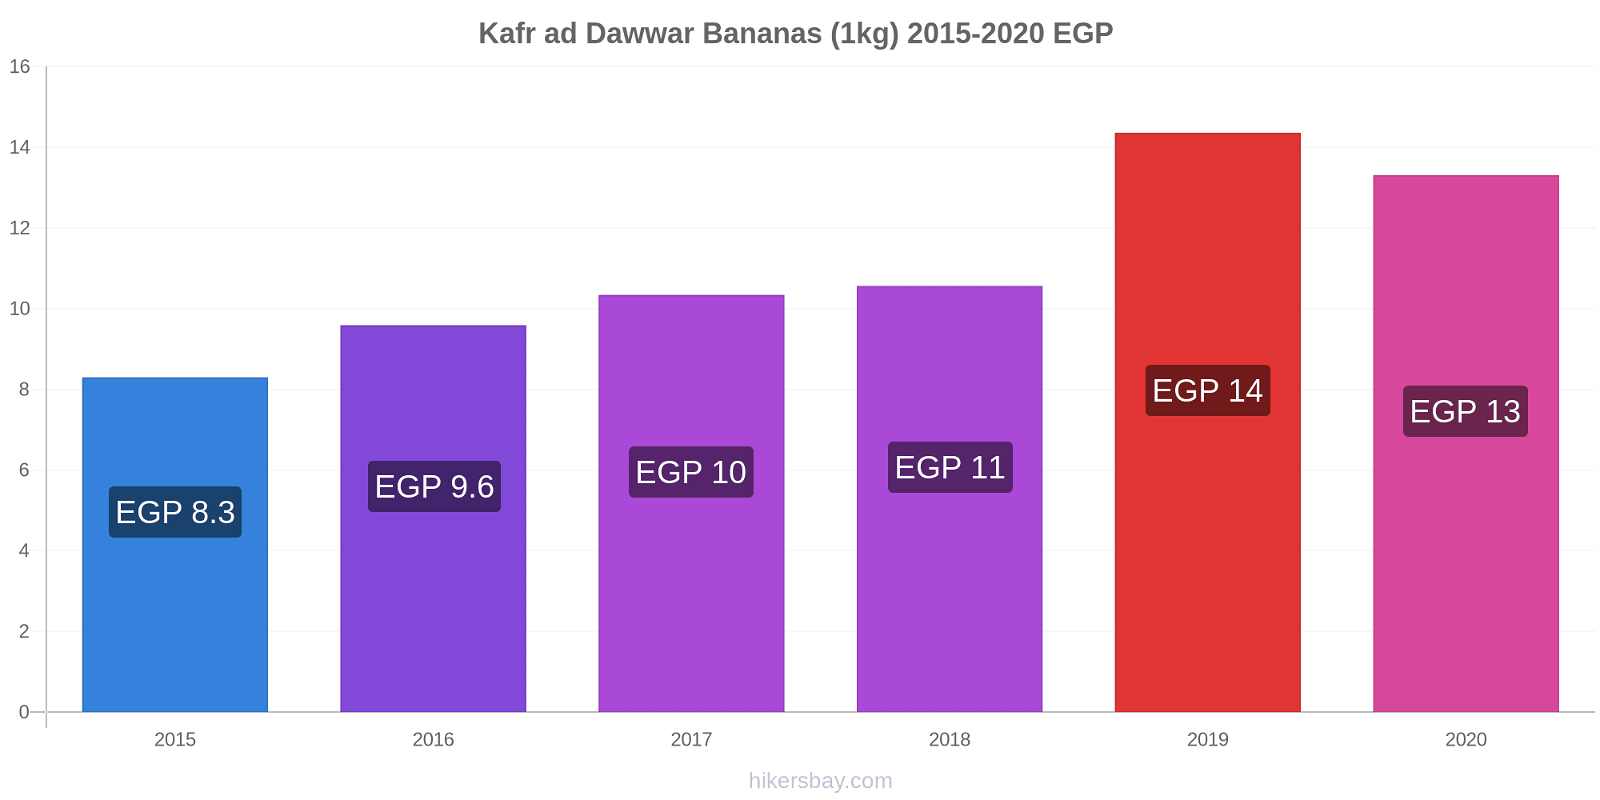 Kafr ad Dawwar variação de preço Banana (1kg) hikersbay.com